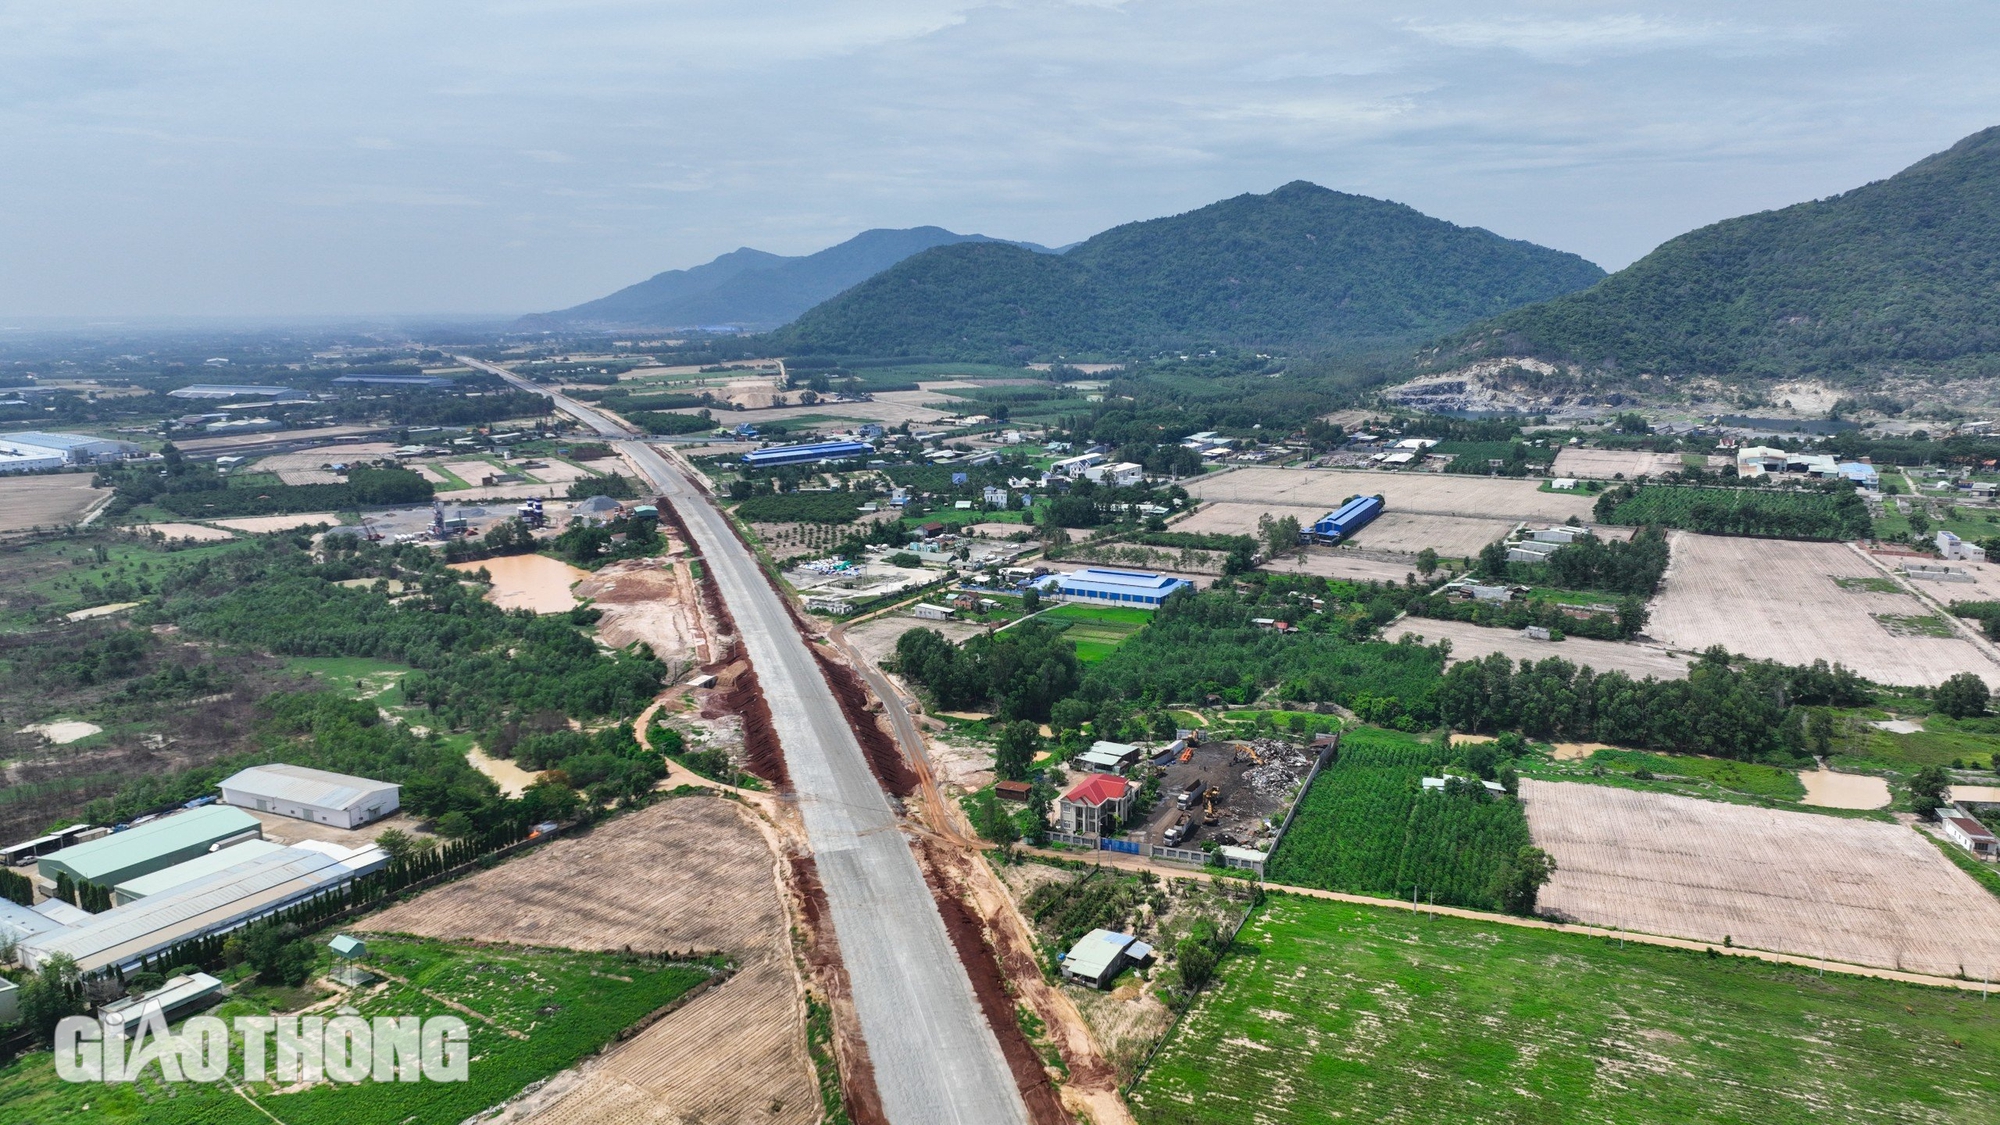 Cao tốc Biên Hòa qua Bà Rịa - Vũng Tàu sẵn sàng thảm nhựa, thông xe kỹ thuật sớm 5 tháng- Ảnh 4.